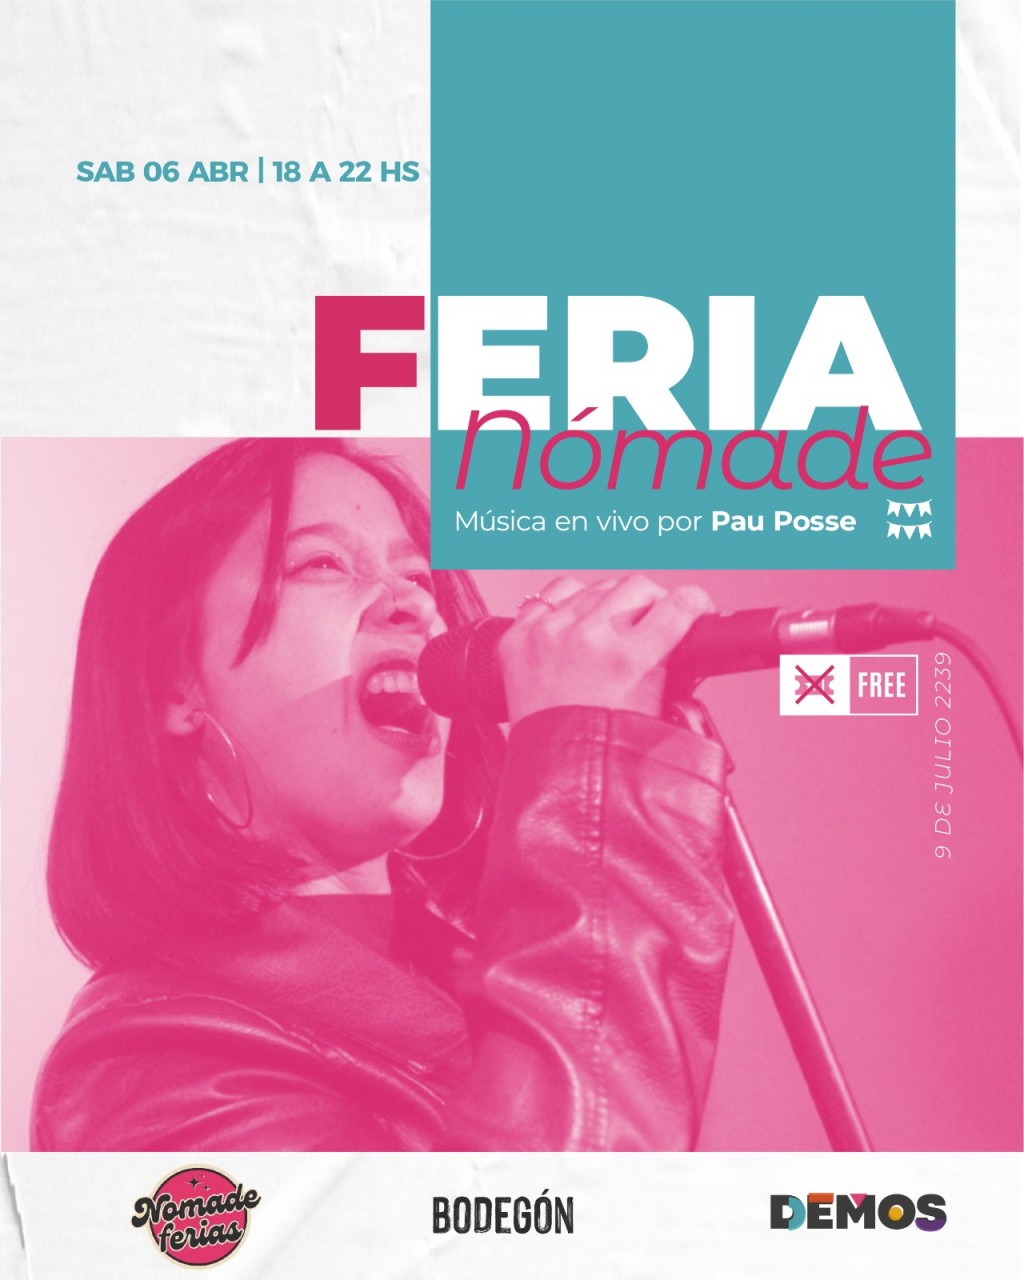 6/4 - Feria Nómade + música en vivo en DEMOS